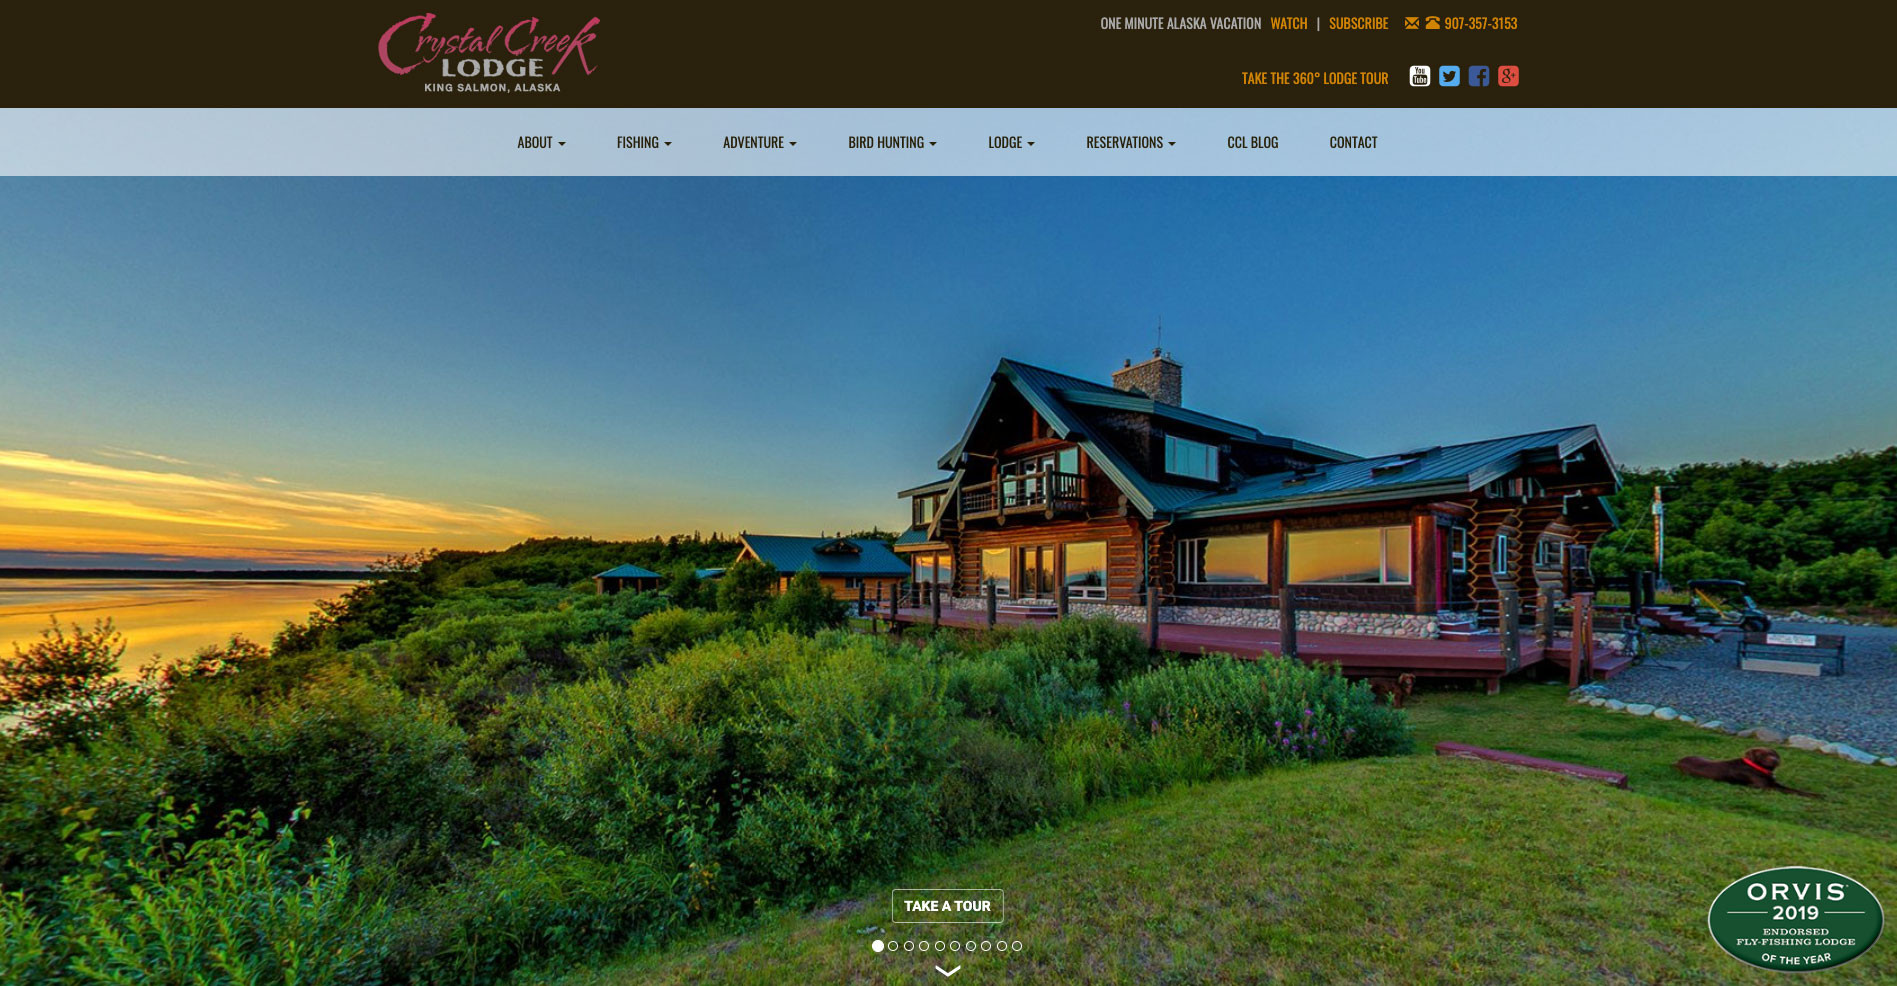 Crystal Creek Lodge Website